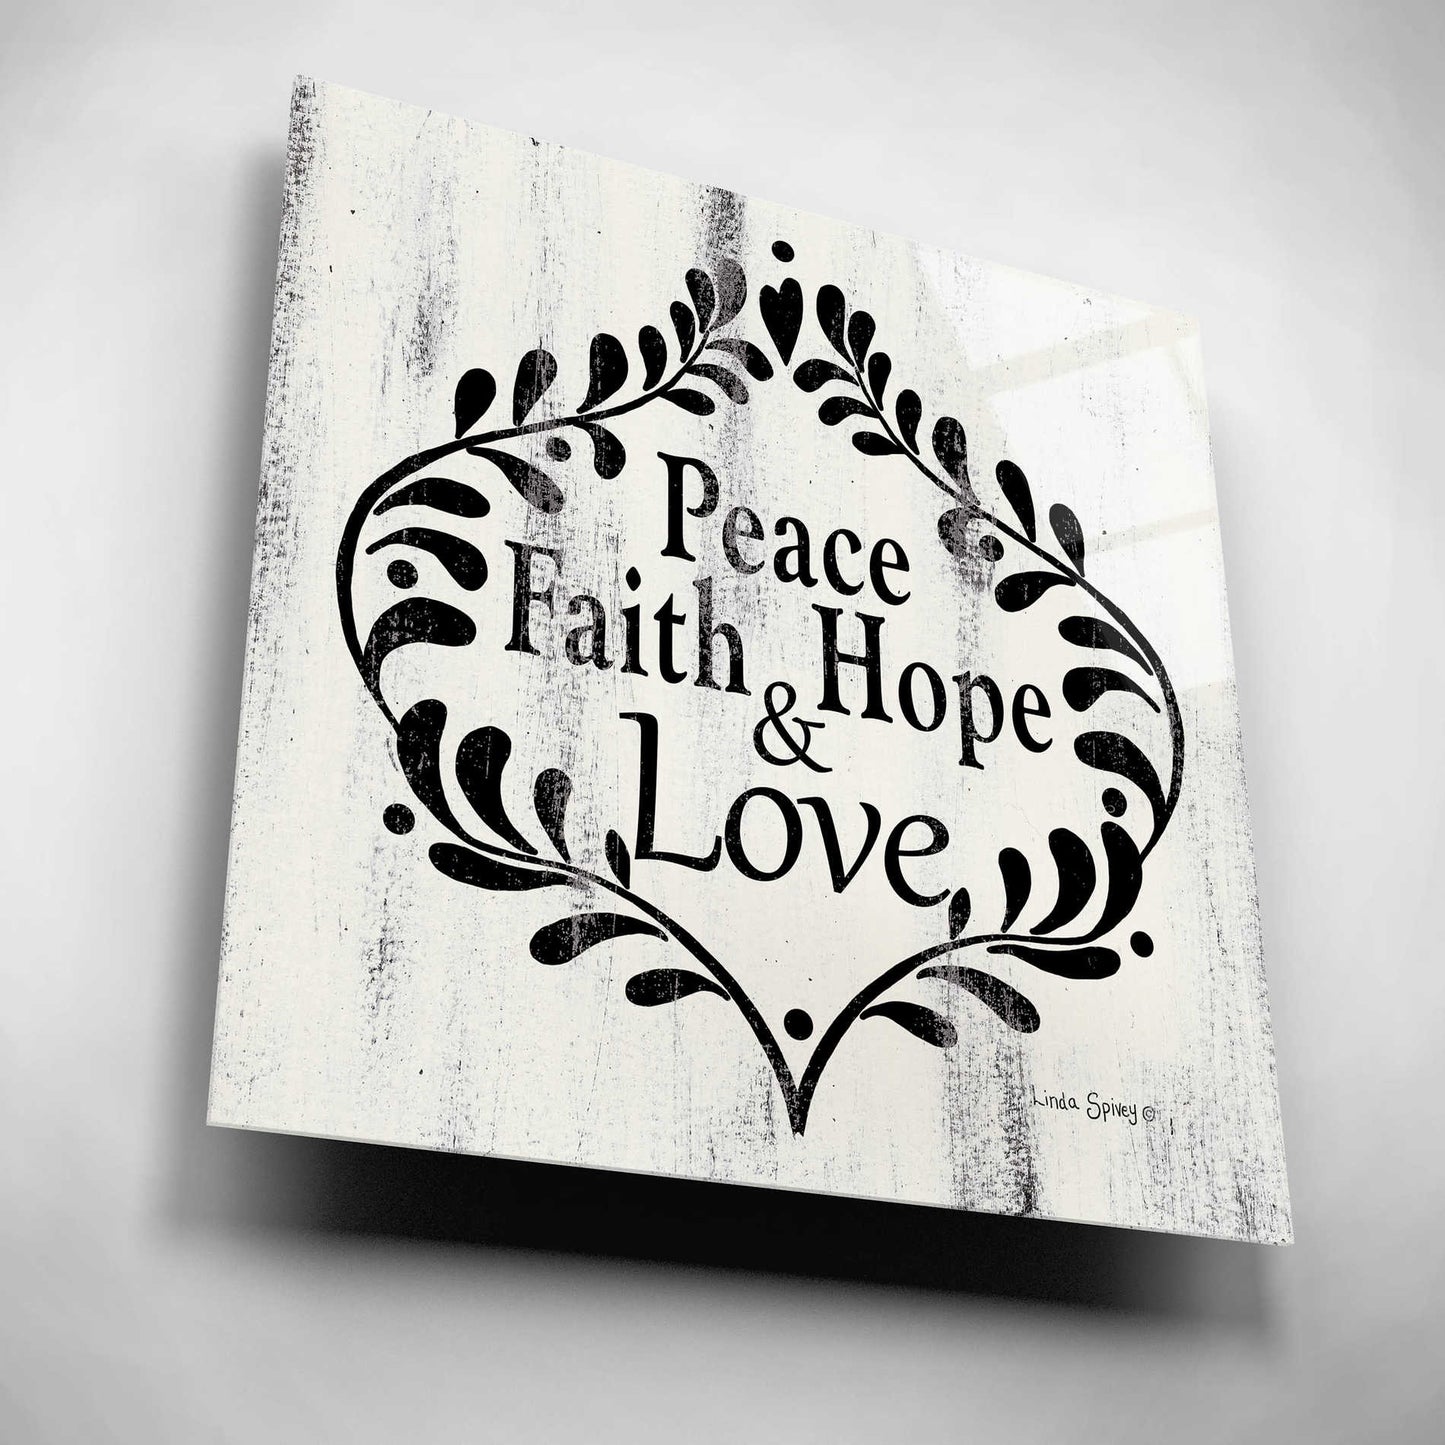 Epic Art 'Peace Faith Hope & Love' by Linda Spivey, Acrylic Glass Wall Art,12x12